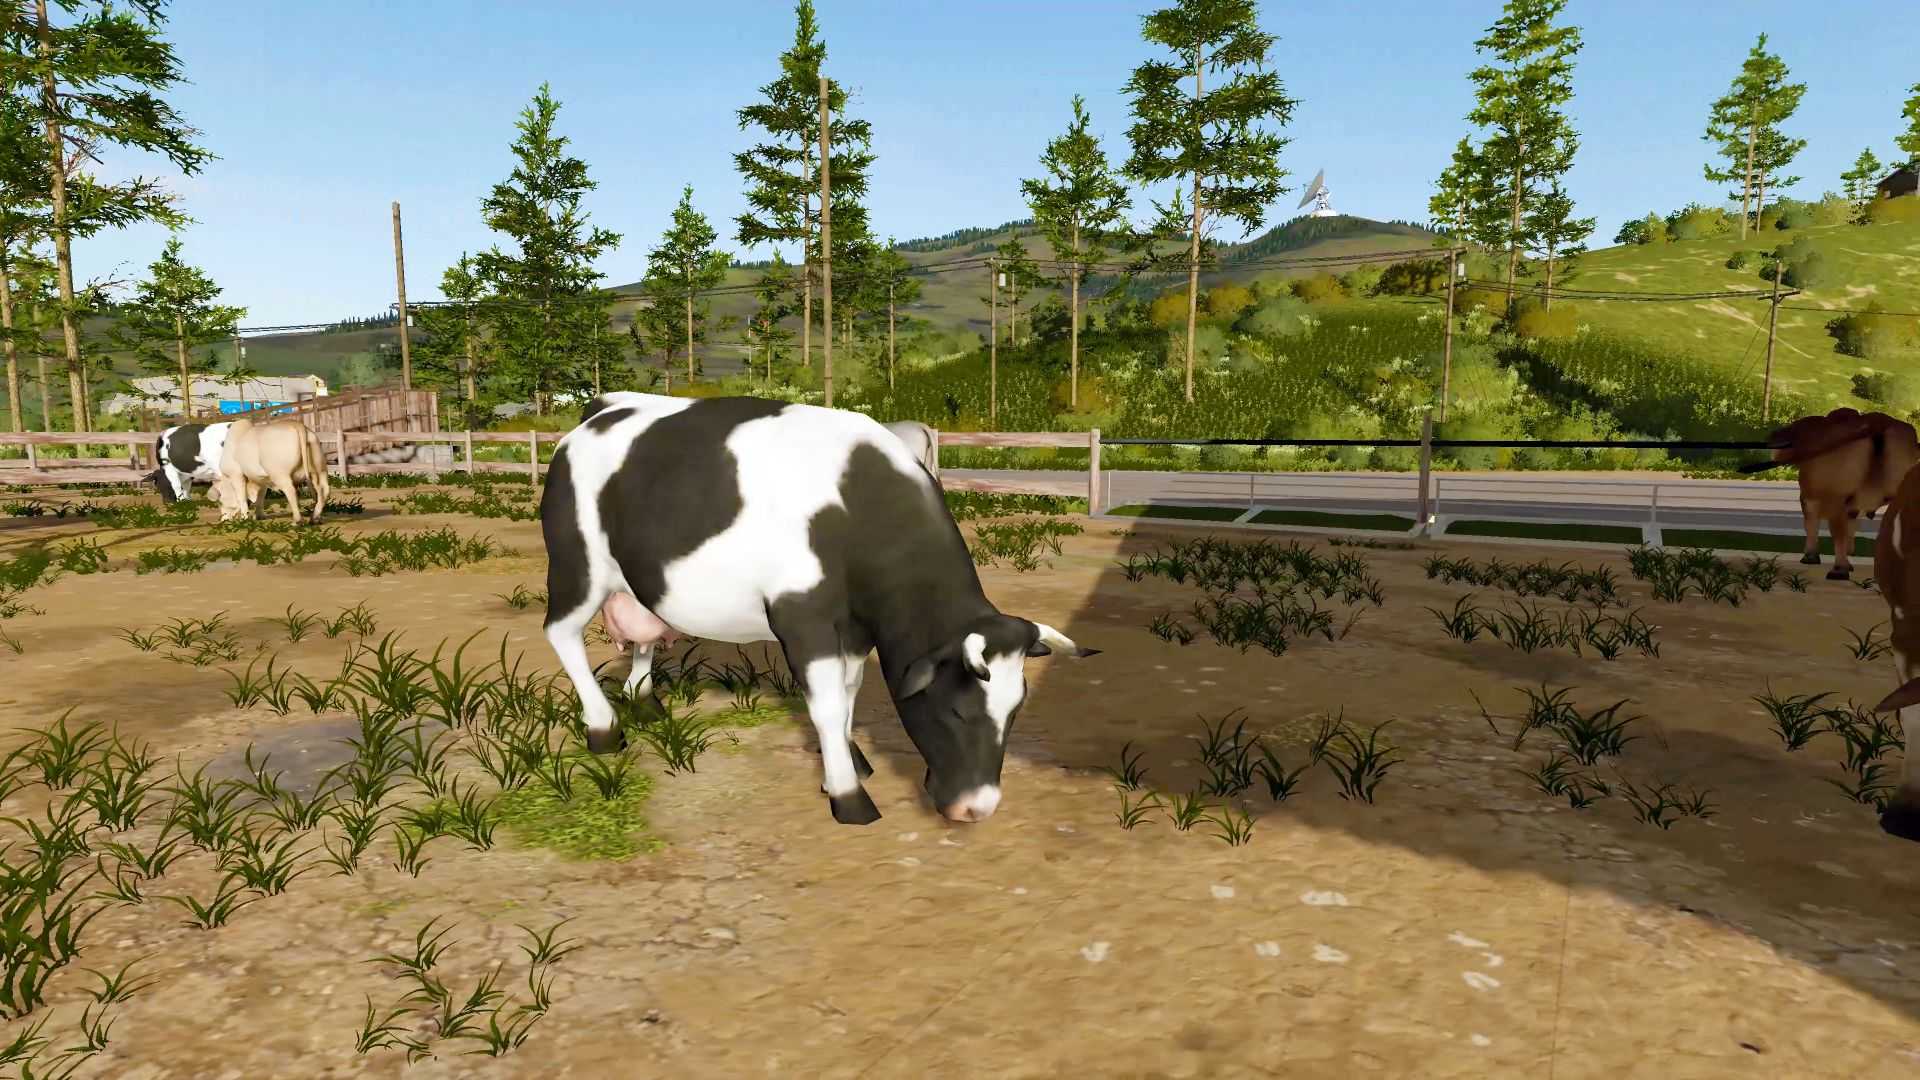 模拟农场2013